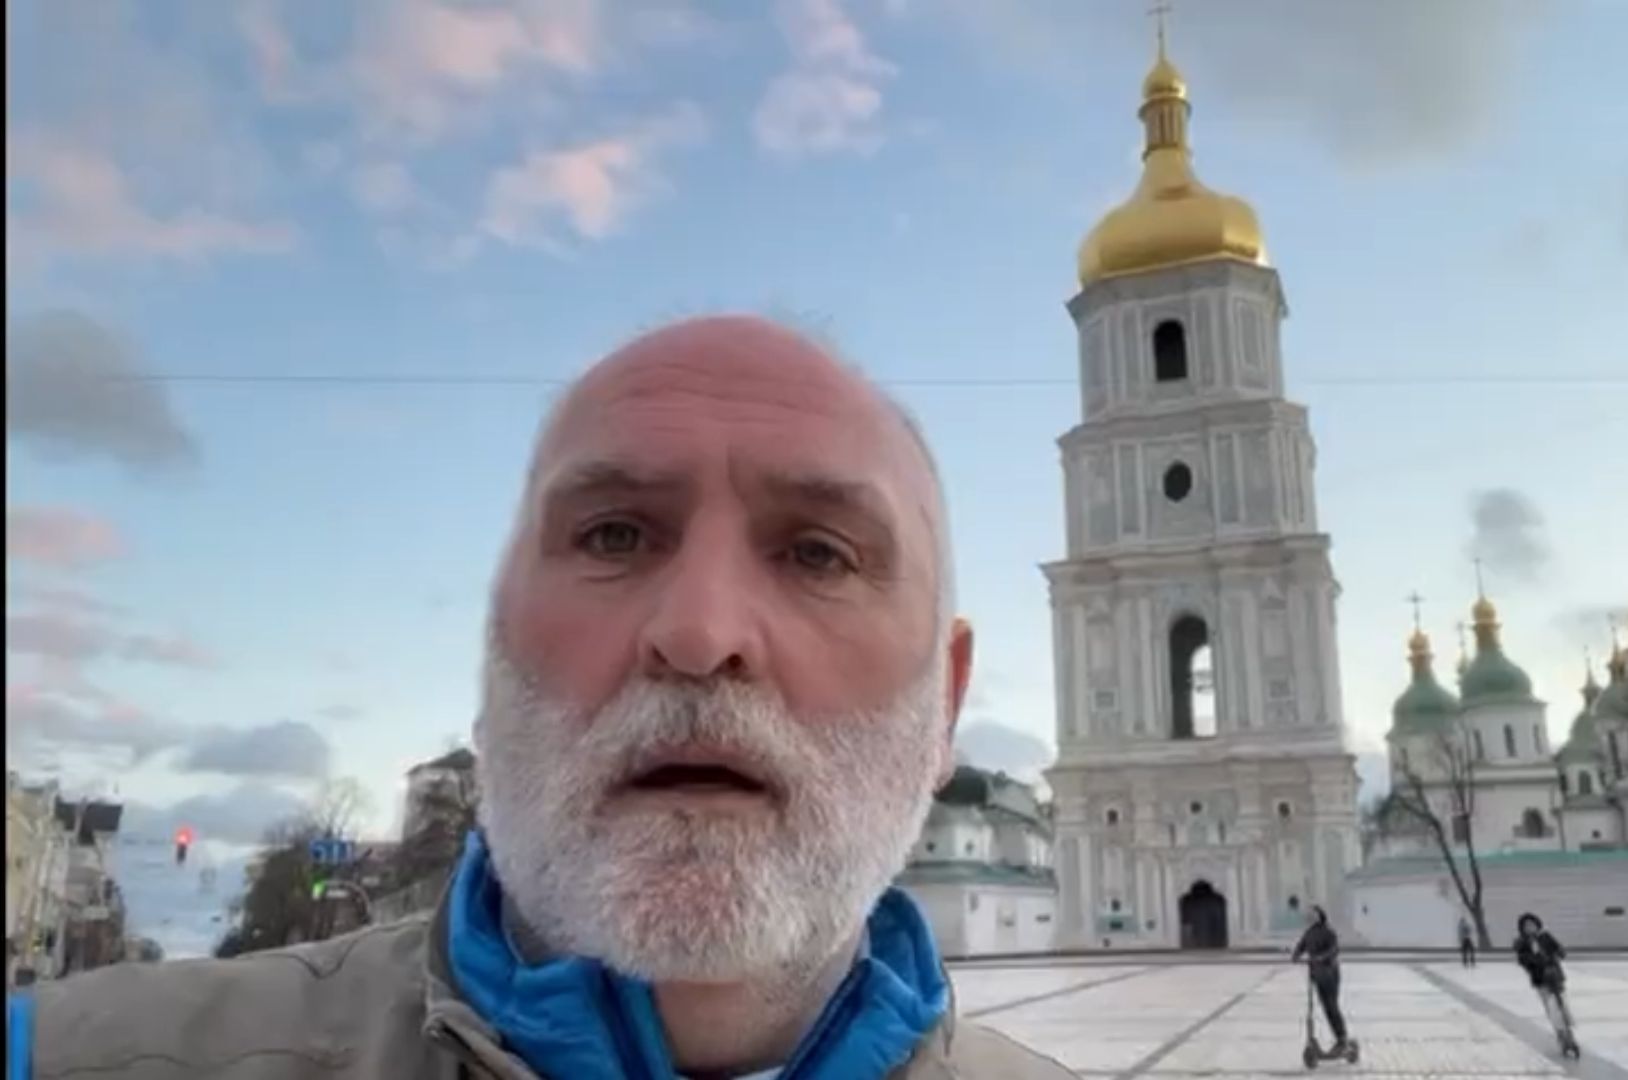 Wiadomość z Ukrainy w Wielkanoc. "Widzimy prawdziwy horror"